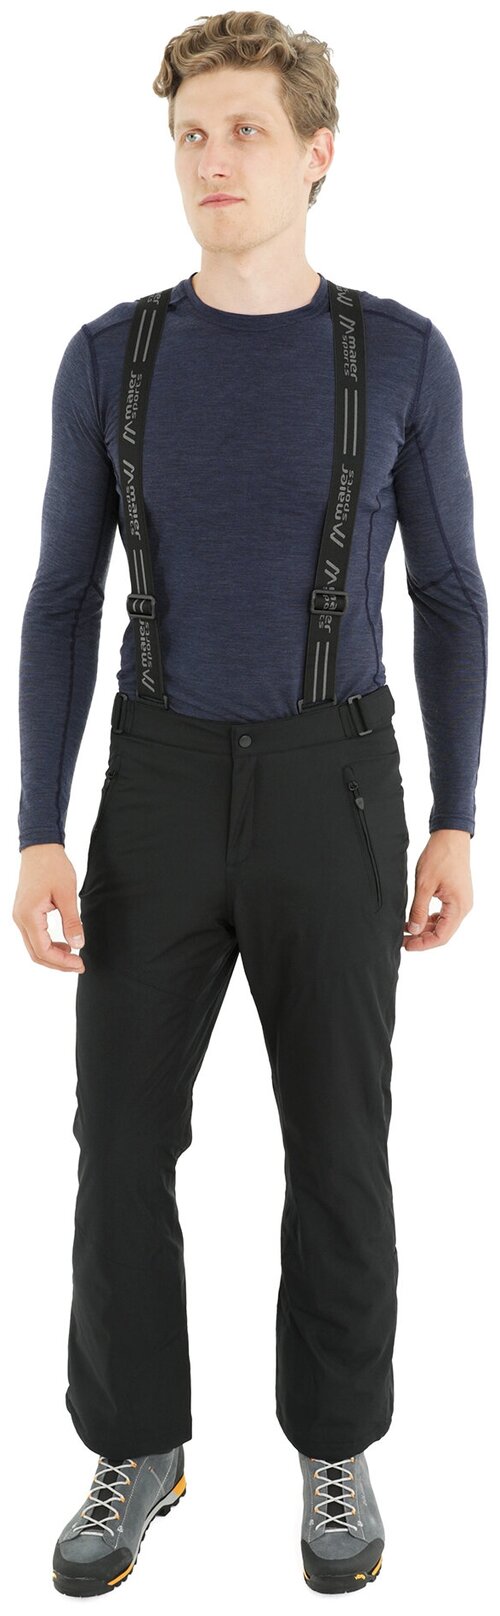 брюки Maier Sports, мембрана, регулировка объема талии, утепленные, размер 50, черный